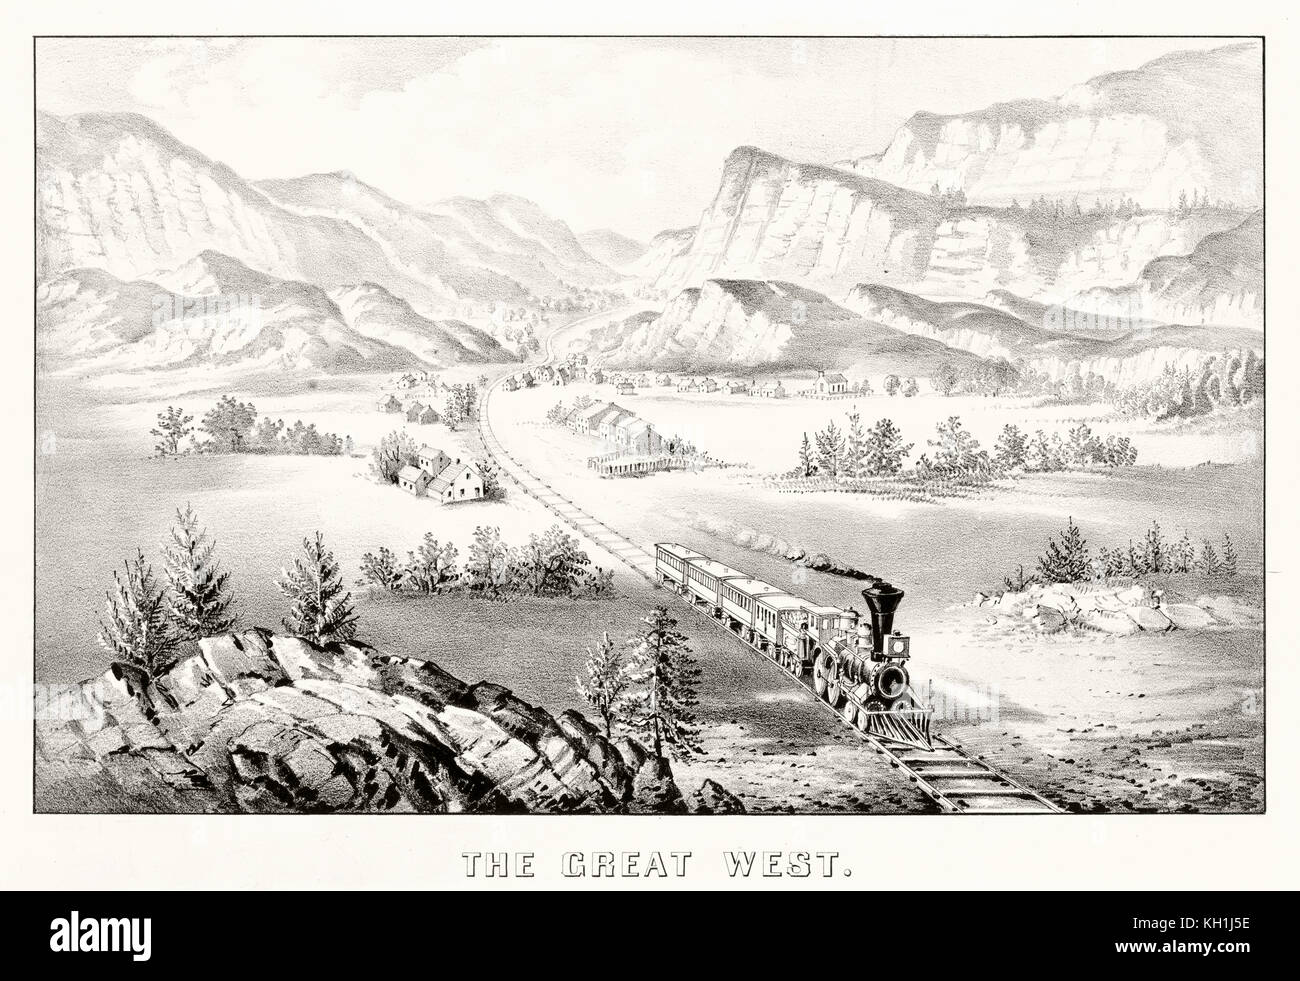 Vieille illustration représentant un train le long du chemin de fer de l'ouest dans une vallée. Par Currier & Ives, publ. à New York, 1870 Banque D'Images